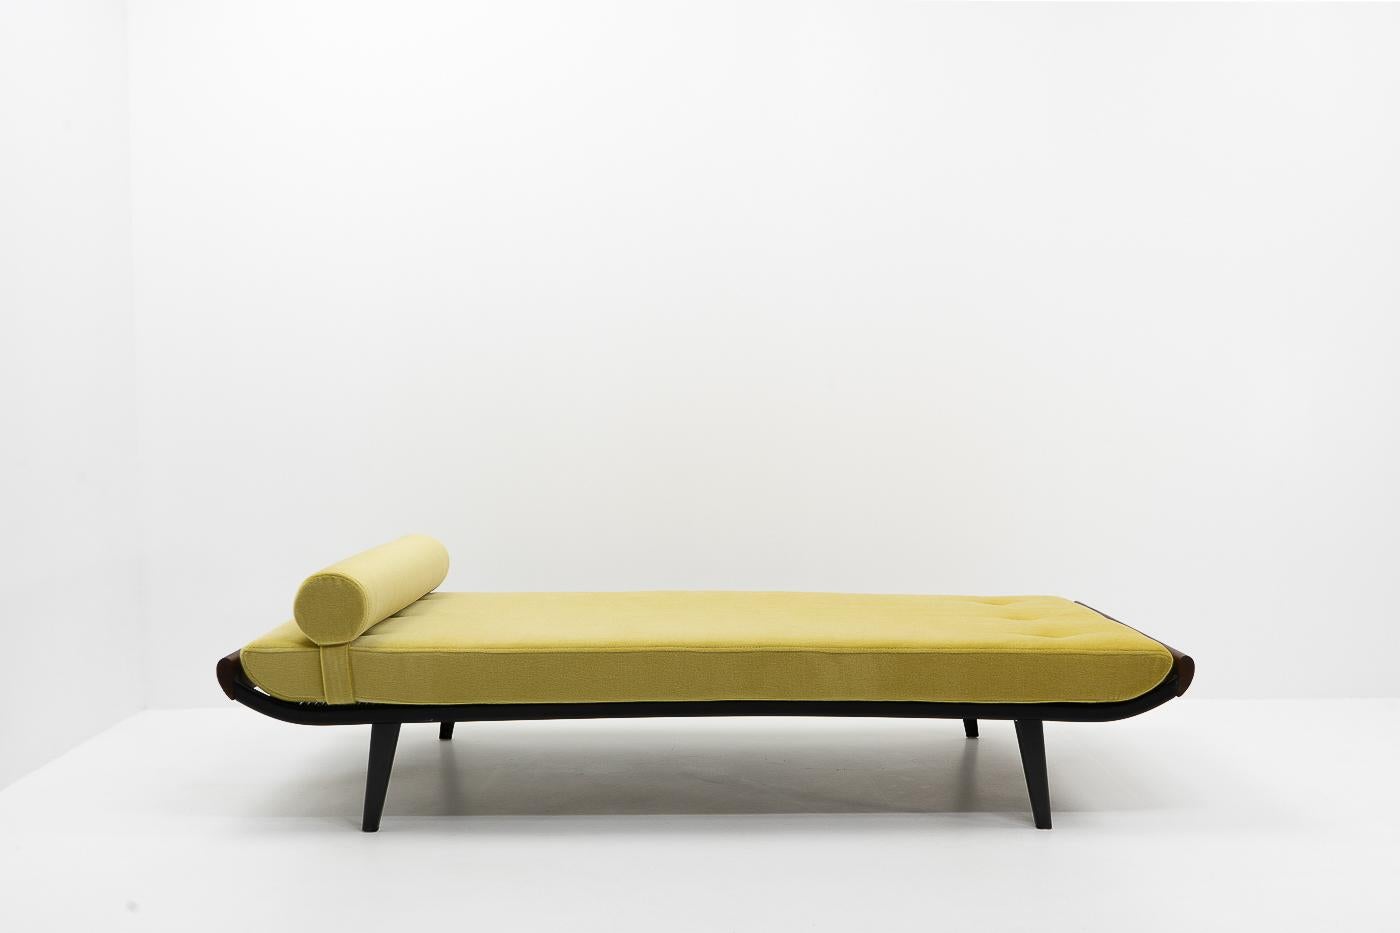 Vintage Daybed, entworfen von Dick Cordemeijer für Auping (Niederlande) in den 1950er Jahren.

Neues exklusives senffarbenes Naturmohair und Schaumstoff; das Daybed kann sowohl als Sofa als auch als Zusatzbett verwendet werden. Der Bezug ist mit